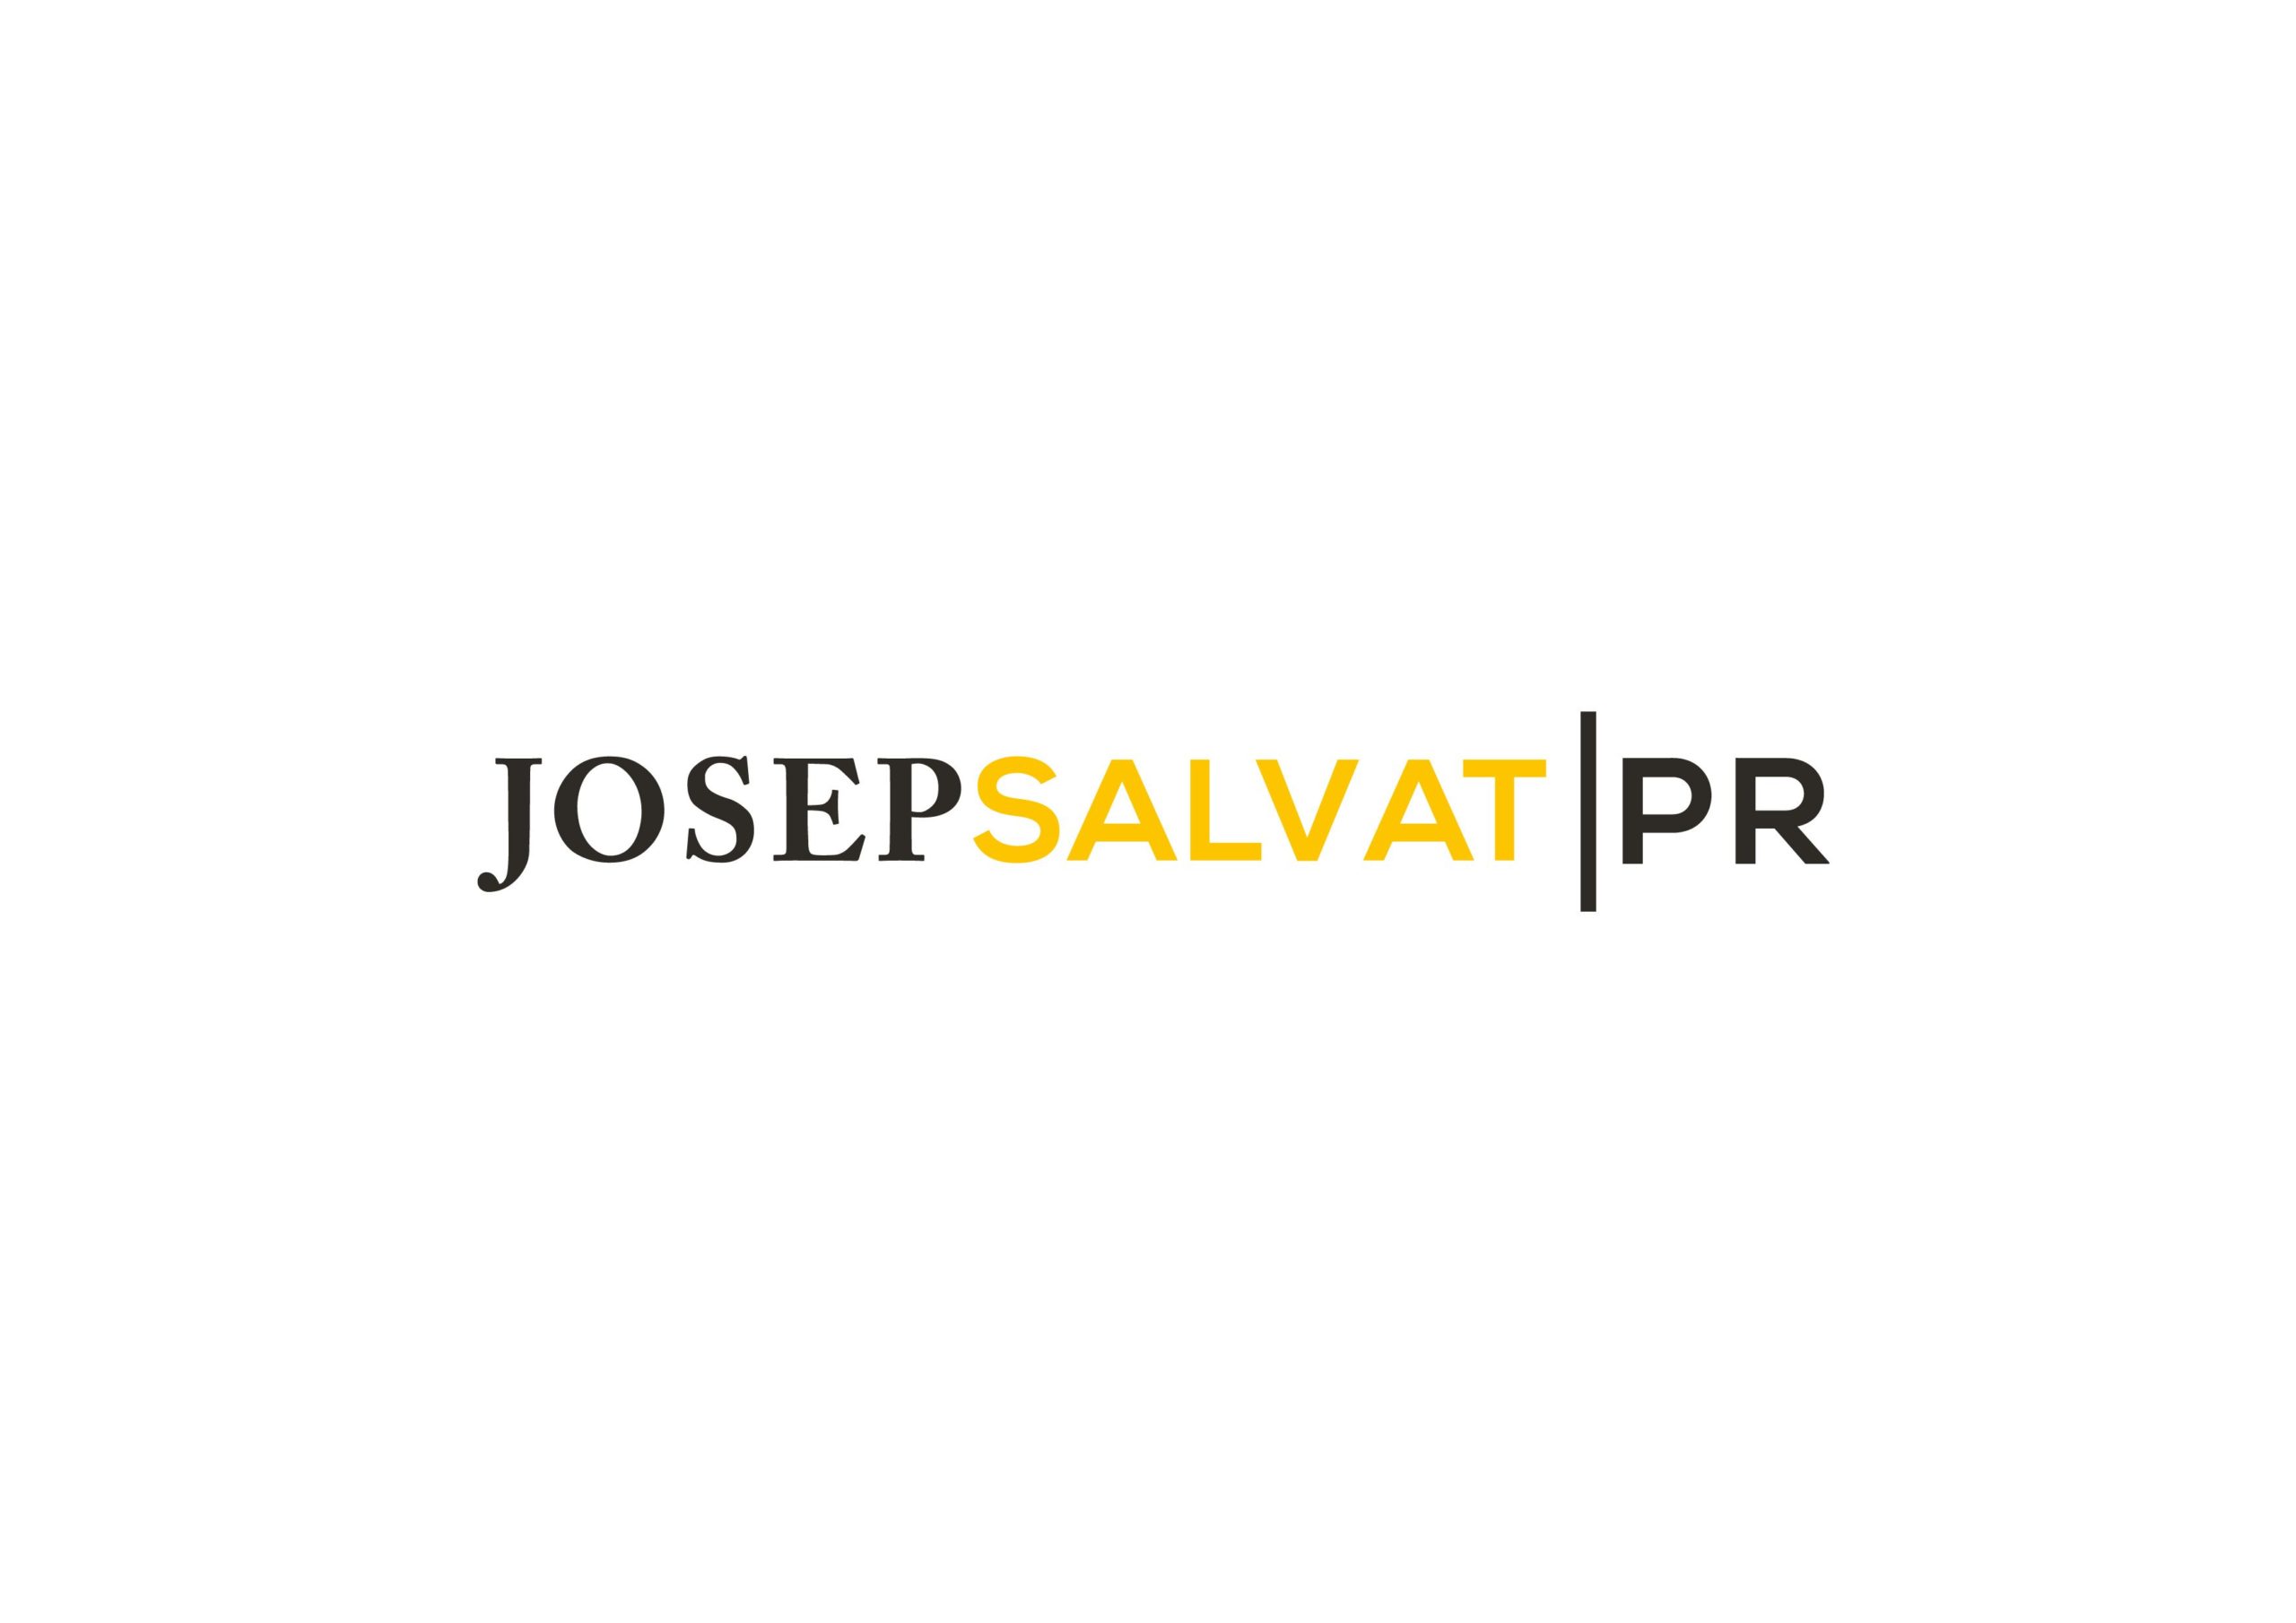 Josep Salvat PR ofrece asesoramiento gratuito en comunicación y RRPP durante el estado de alarma